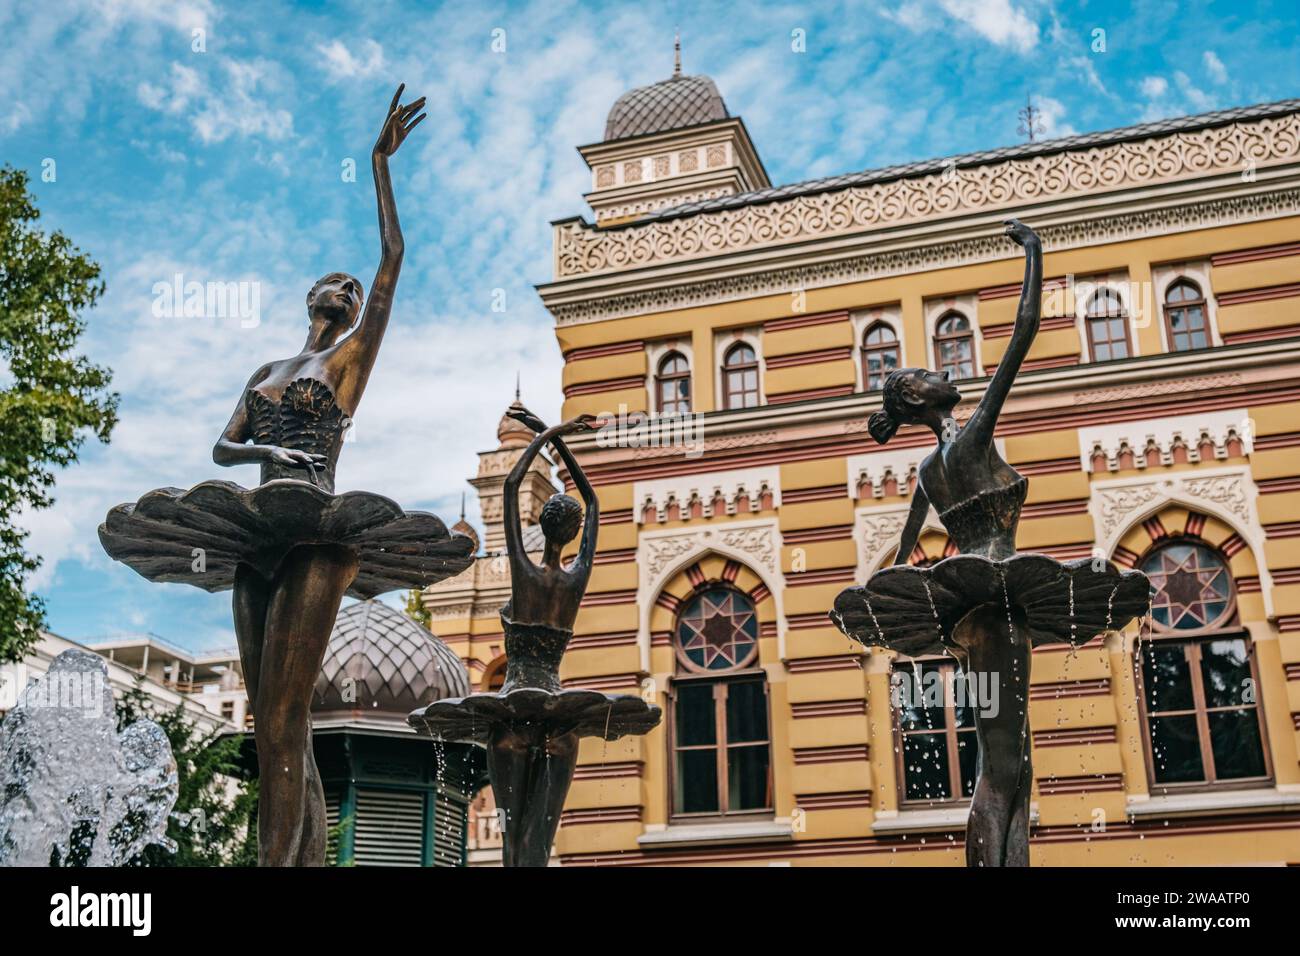 Statues de dames dansantes près de l'Opéra de Tbilissi sur l'avenue Shota Rustaveli à Mtatsminda, Tbilissi (Géorgie) Banque D'Images